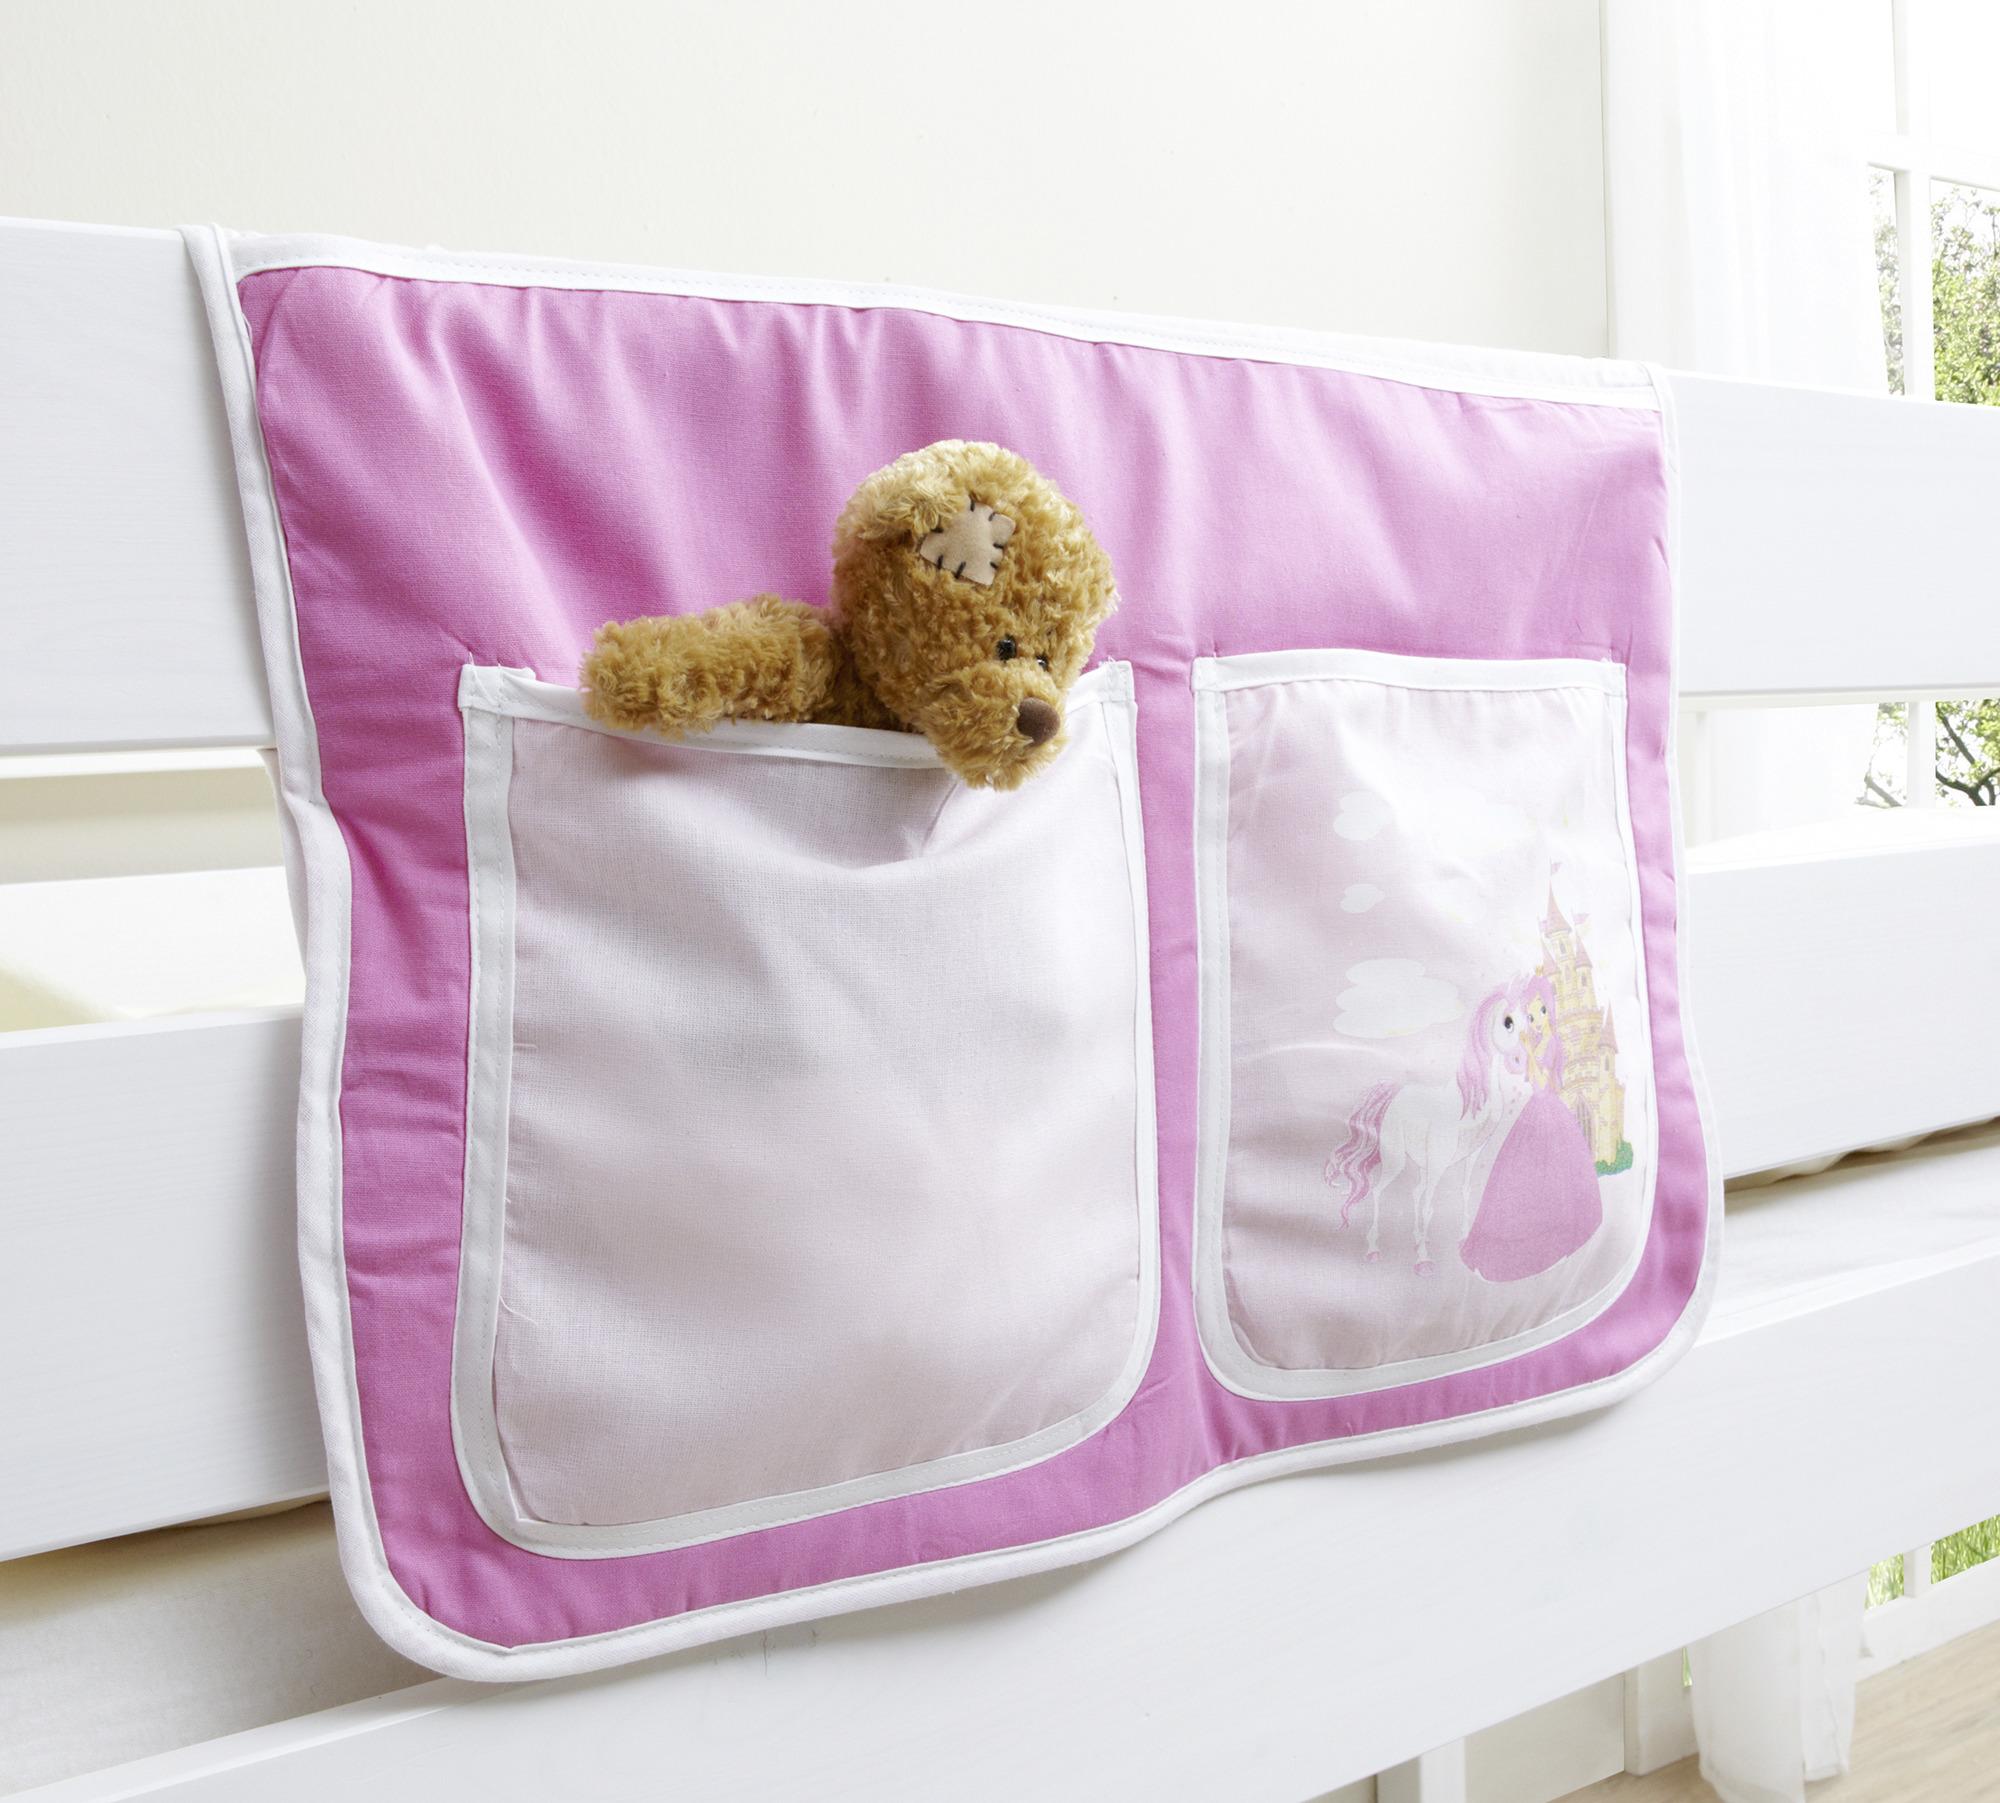 Betttasche "Stofftasche", pink - Pink, KONVENTIONELL, Textil (56/32/2cm) - MID.YOU